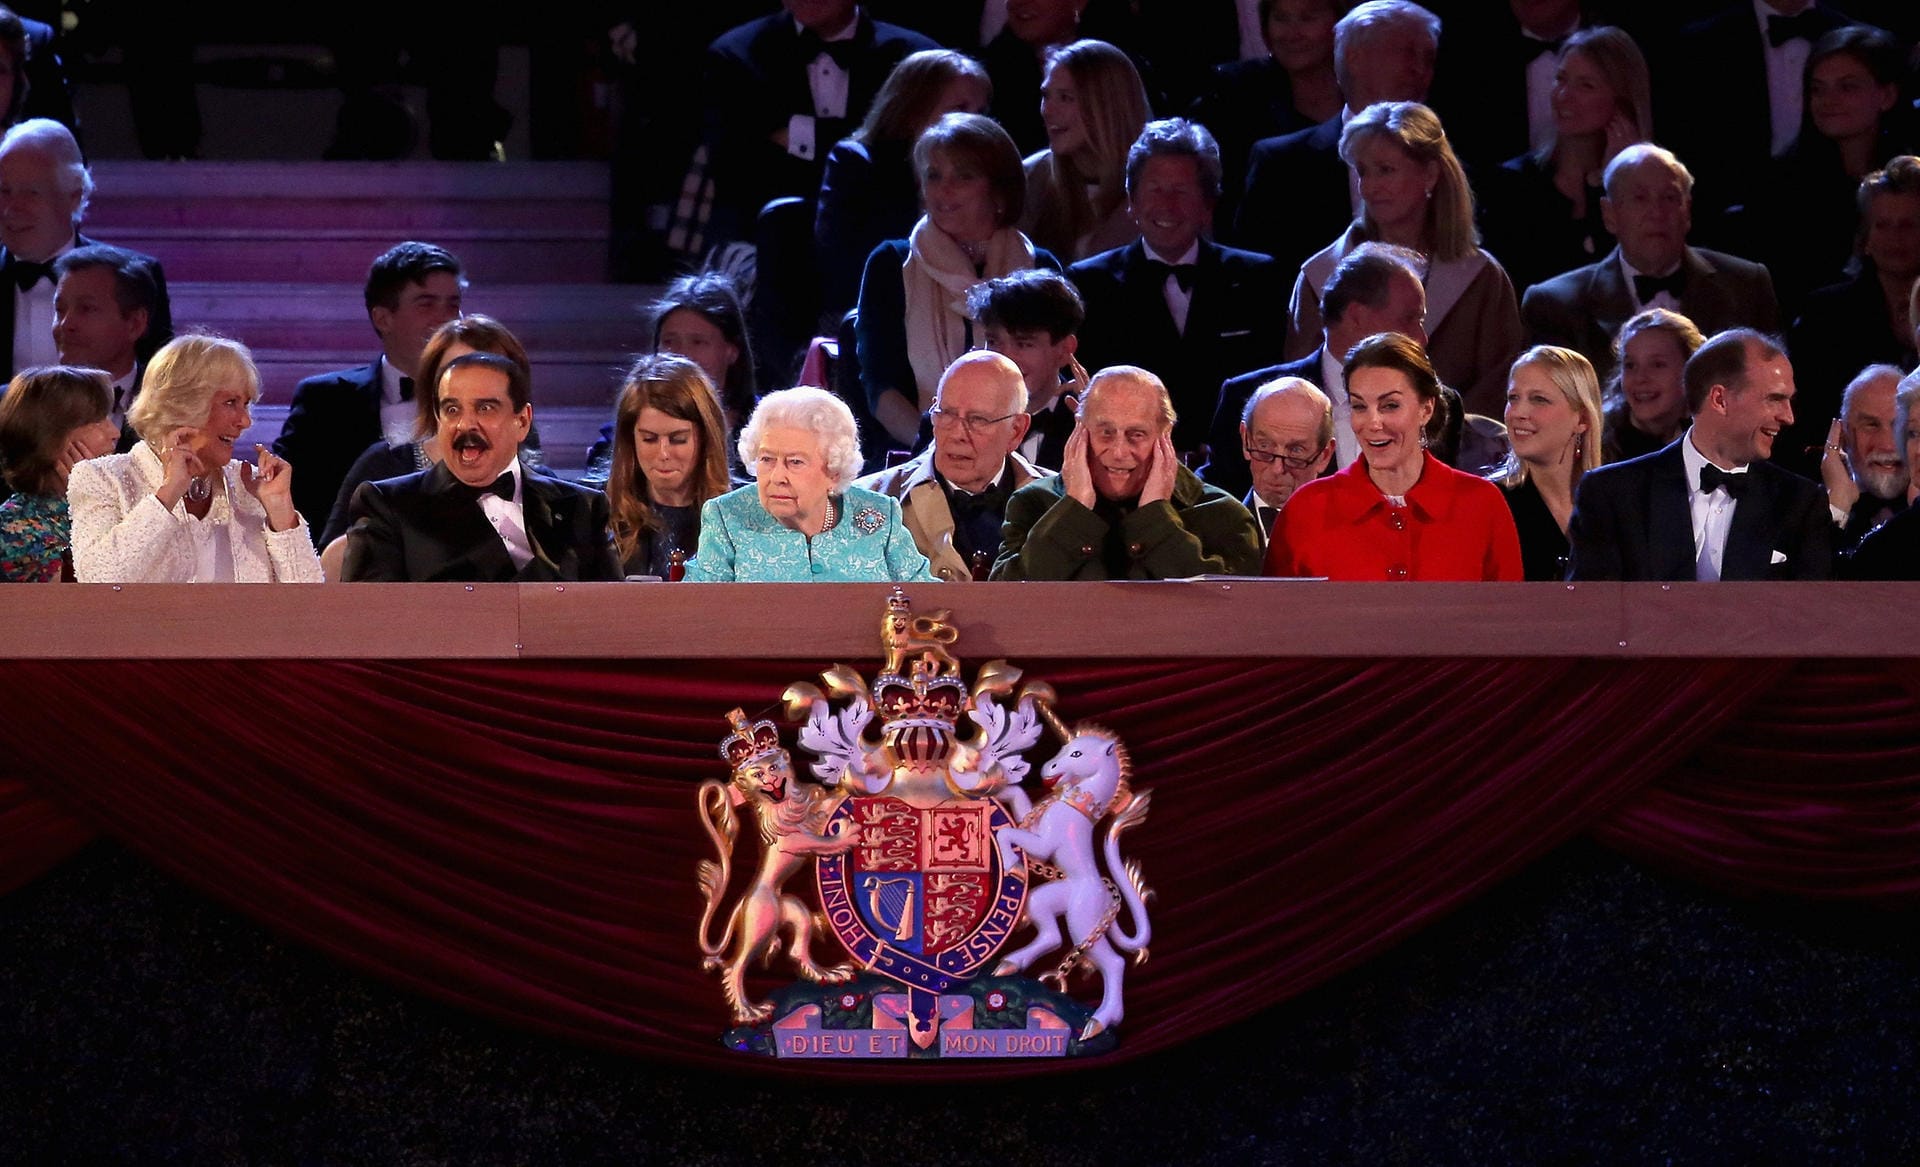 Auf der Ehrentribüne beobachtete die Queen gespannt das Programm. Auch Kate hatte offenkundig Spaß. Die lauten Salutschüsse waren aber wohl etwas zu viel für die Ohren von Camilla und Prinz Charles.